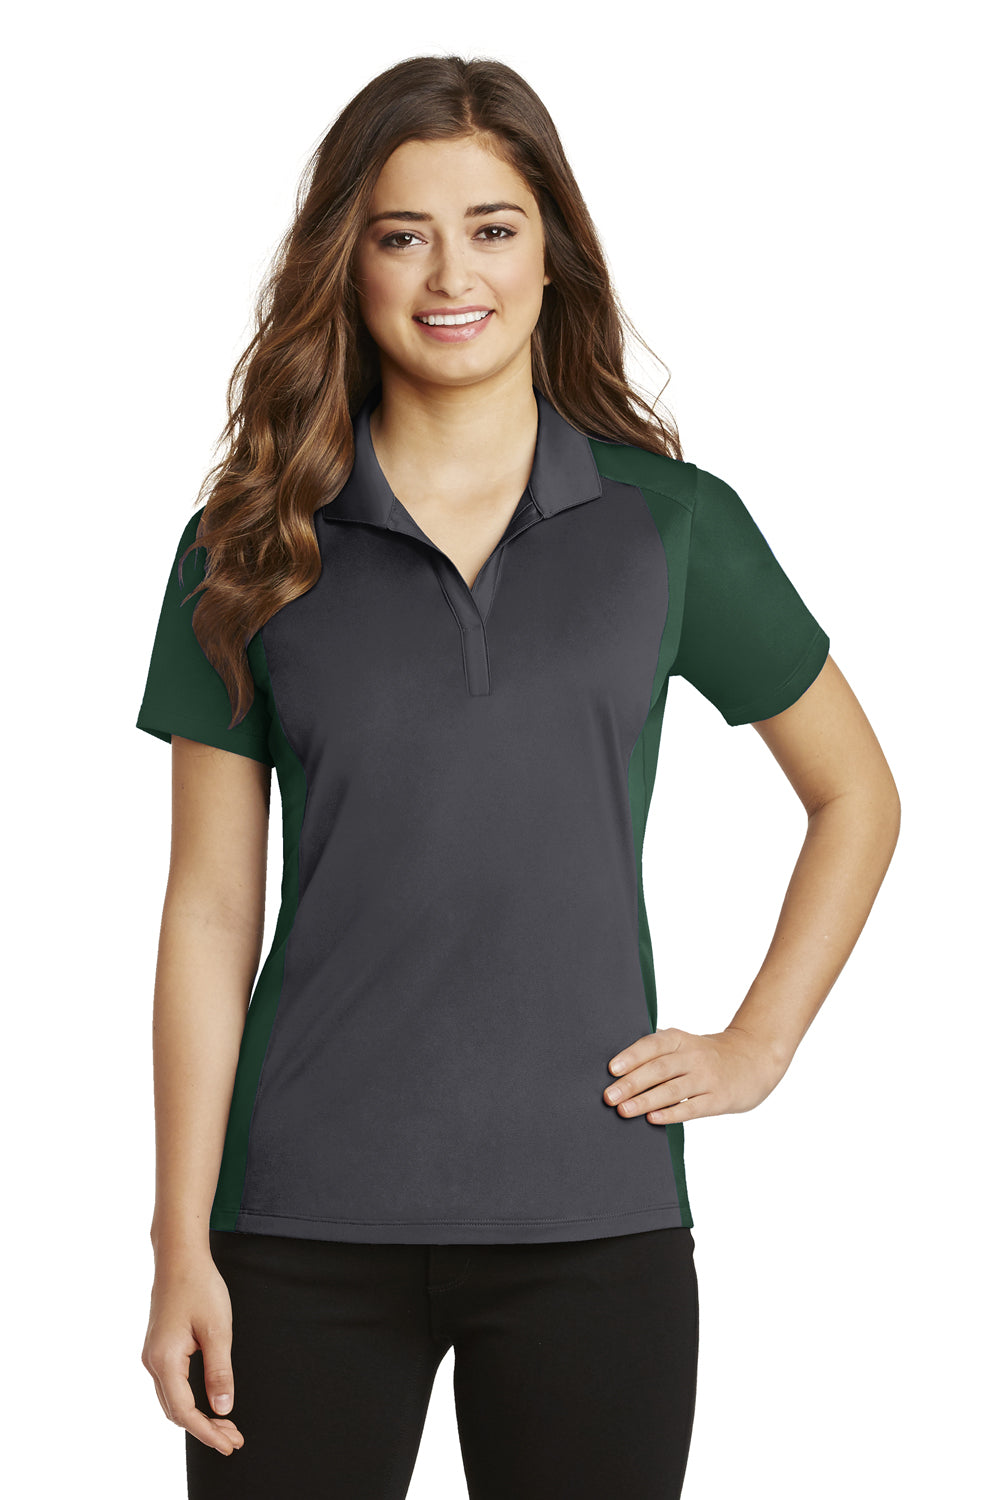 Sport-Tek LST652 Womens Sport-Wick Moisture Wicking Short Sleeve Polo Shirt Iron Grey/Forest Green Front